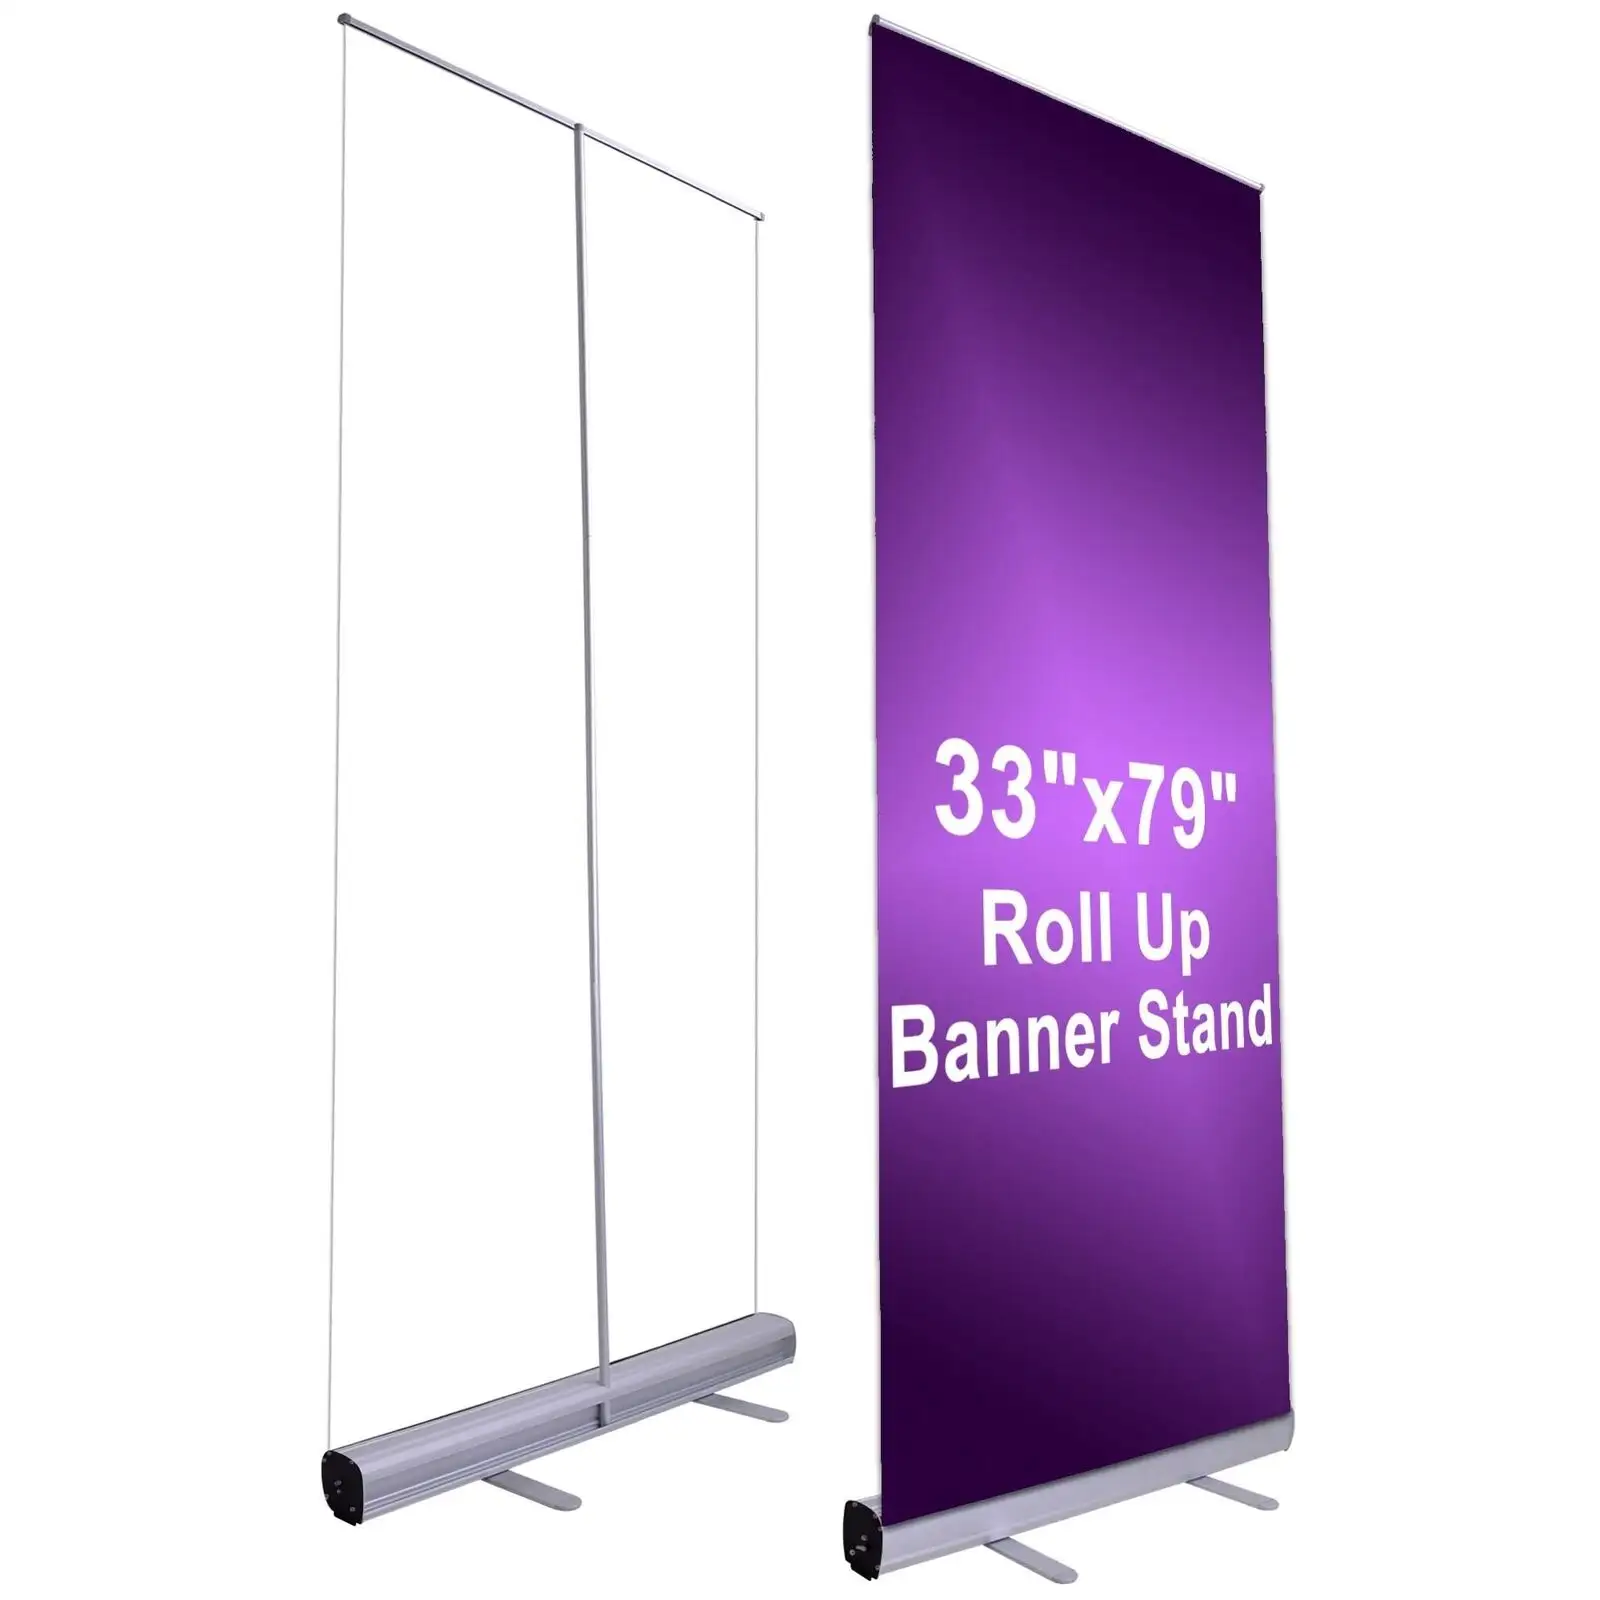 Soporte extraíble Soporte de exhibición de publicidad portátil Stand Promoción Evento Feria comercial Rollup Banner Stand